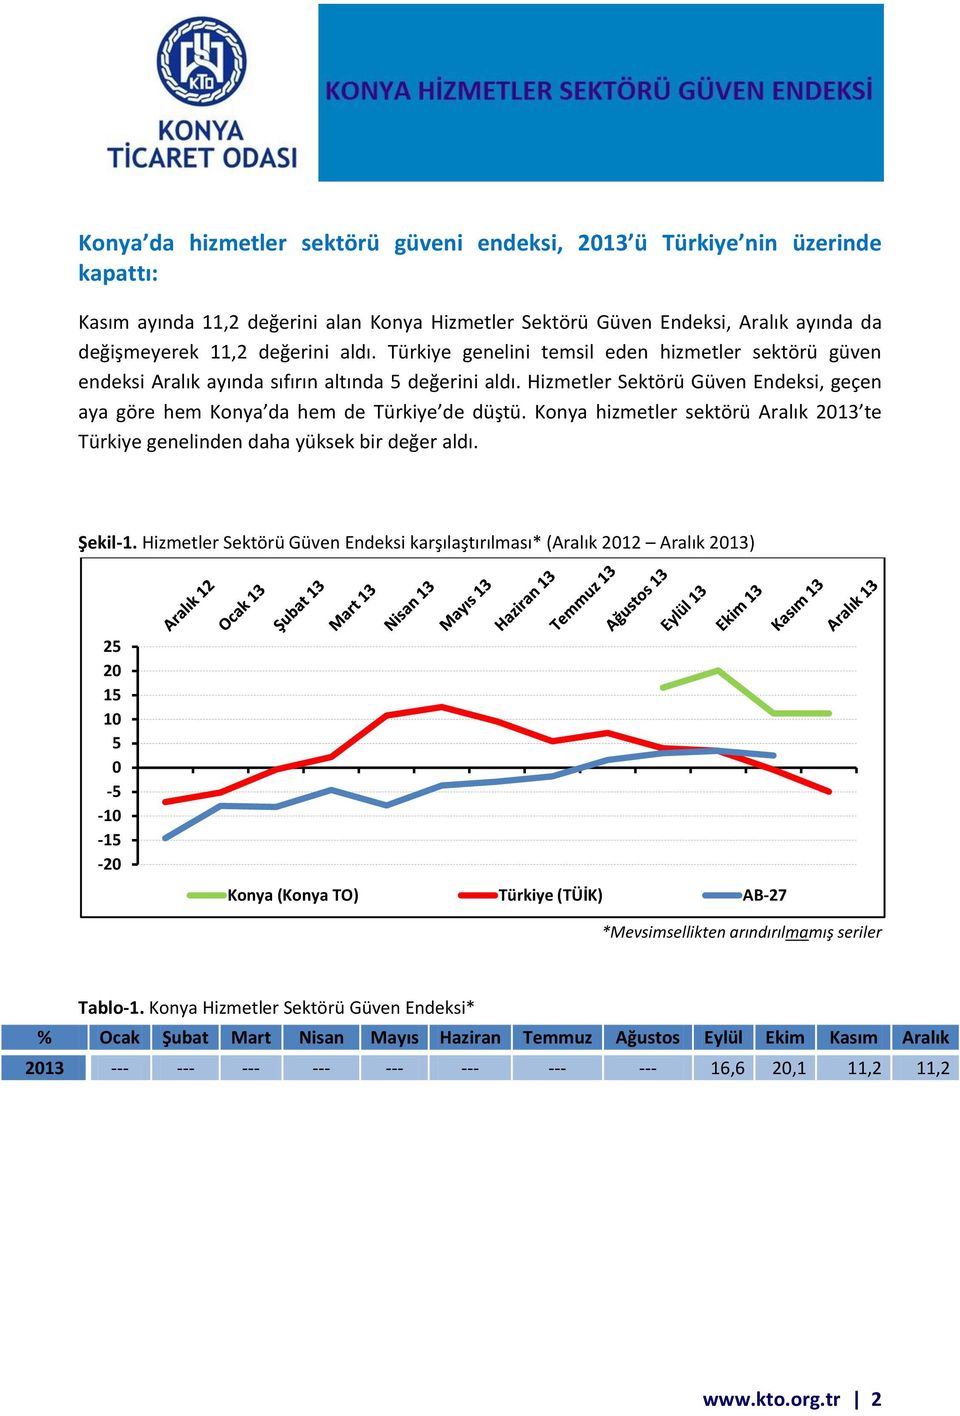 Konya hizmetler sektörü Aralık 2013 te Türkiye genelinden daha yüksek bir değer aldı. Şekil-1.